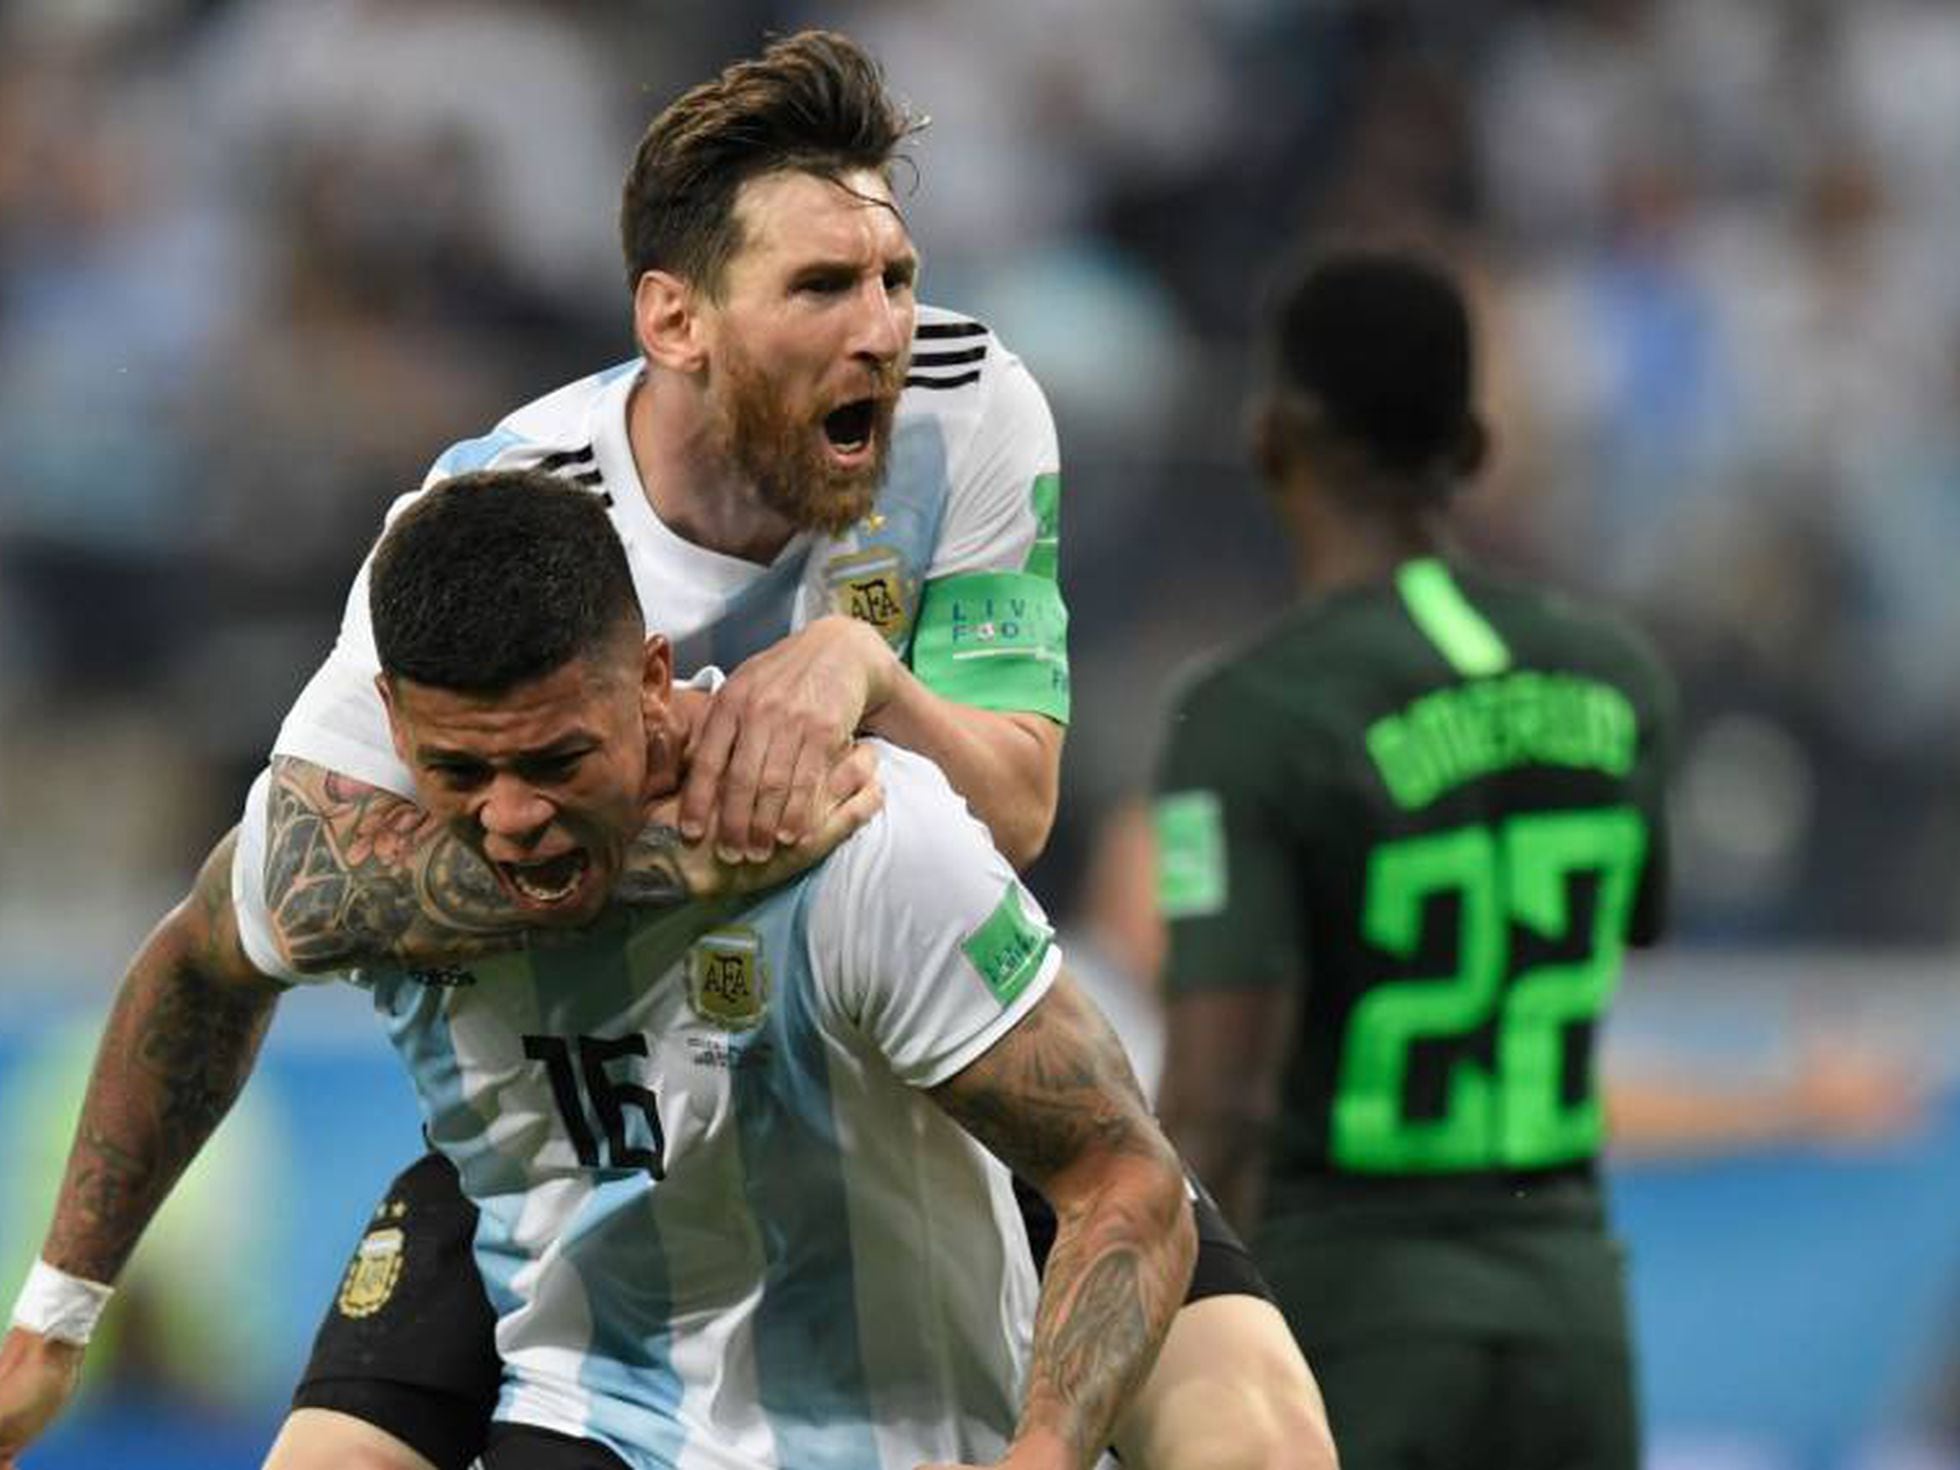 Copa 2018: Messi desperta e conduz Argentina às oitavas - Portal Morada -  Notícias de Araraquara e Região